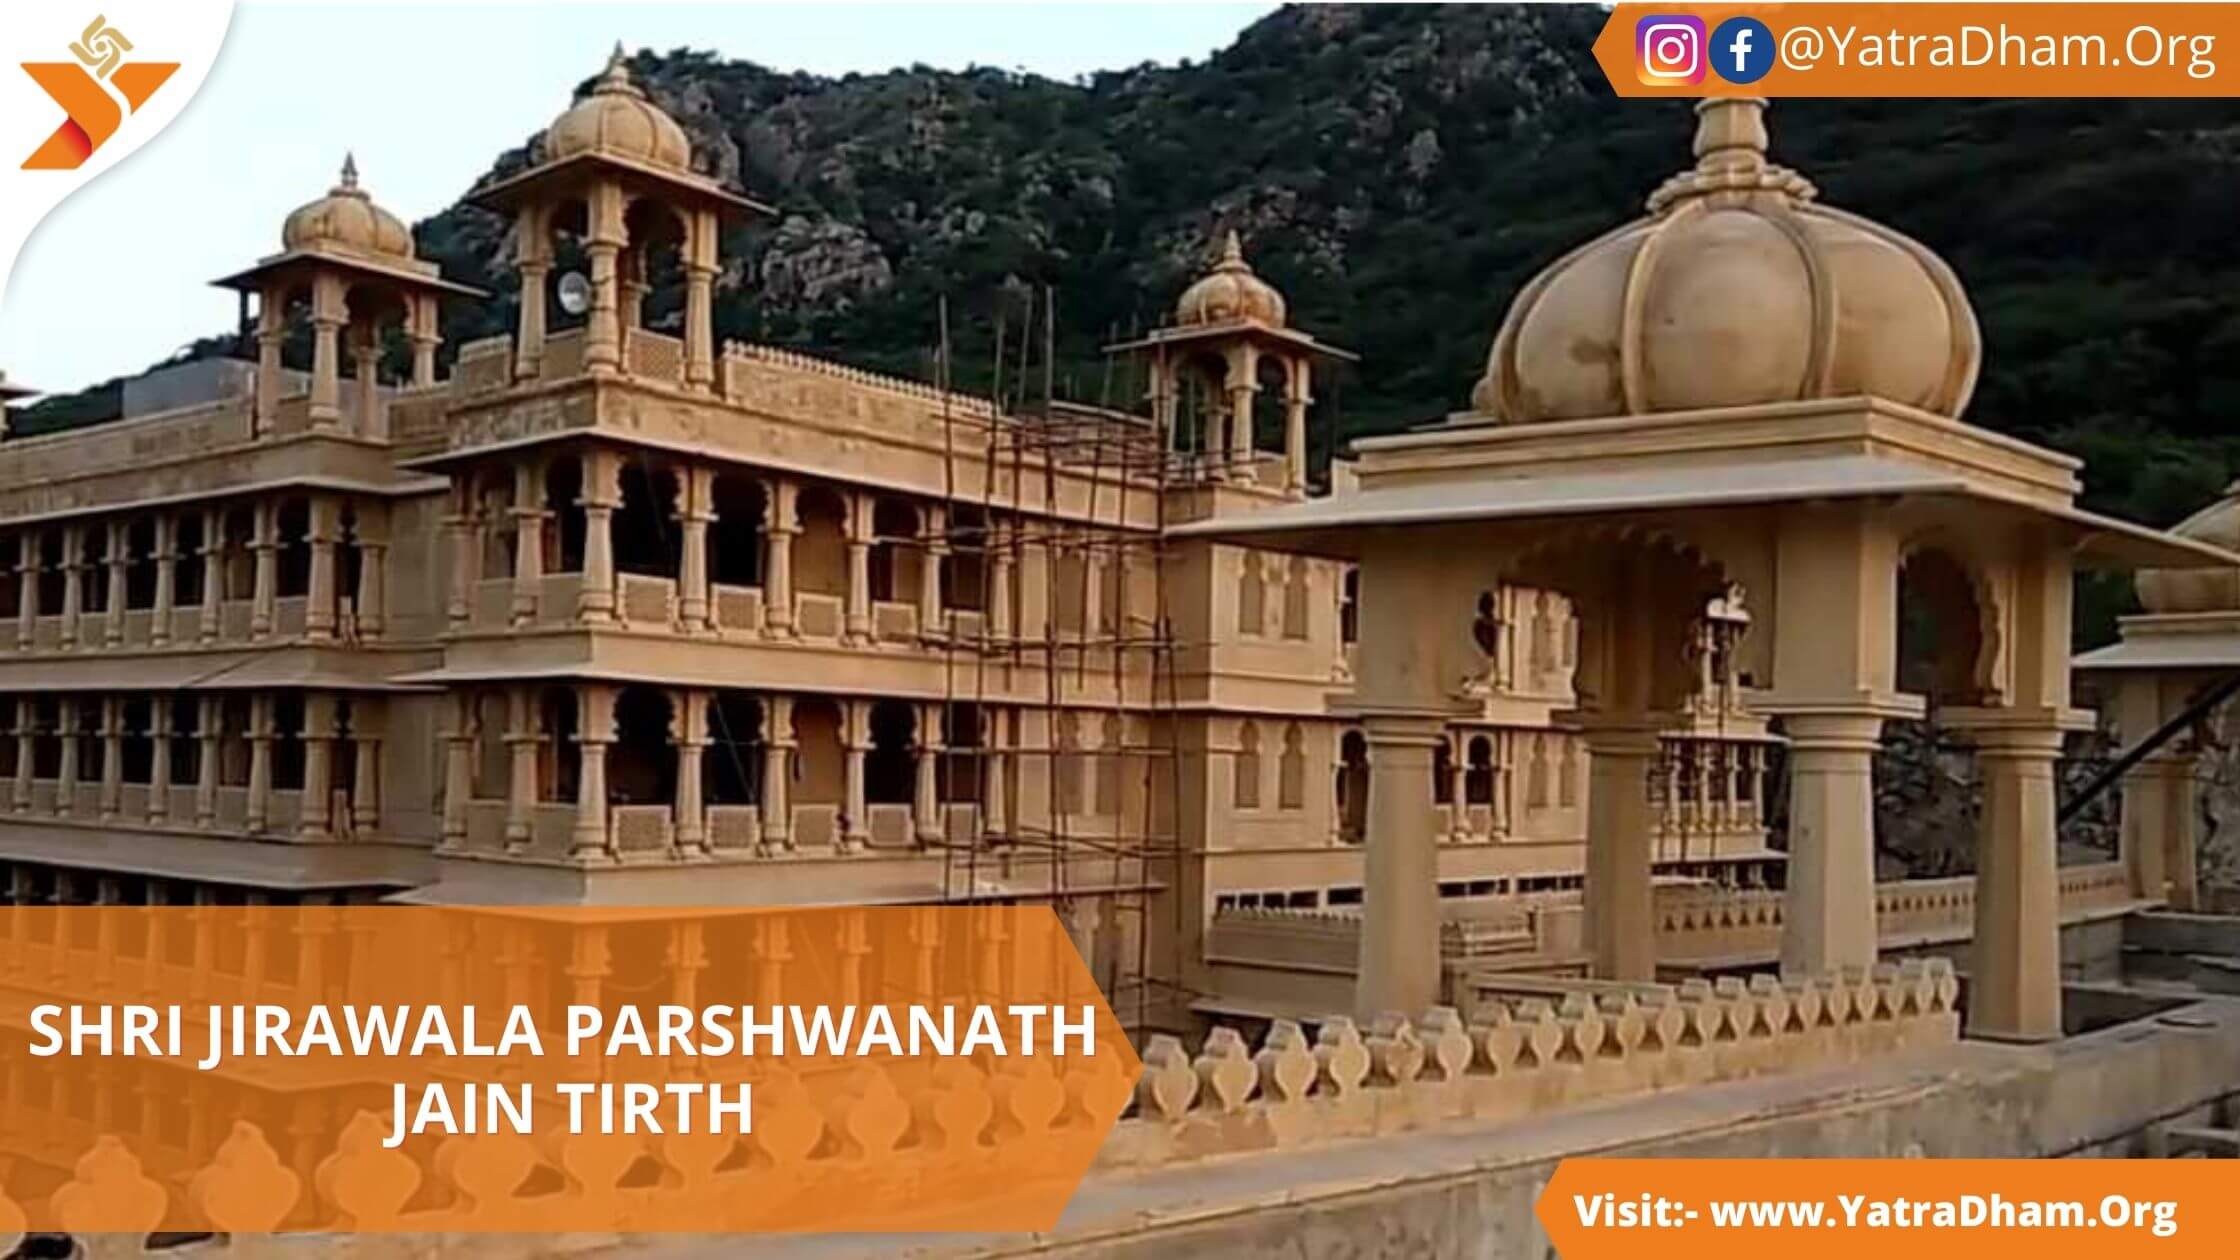 Shri Jirawala Parshwanath Jain Tirth